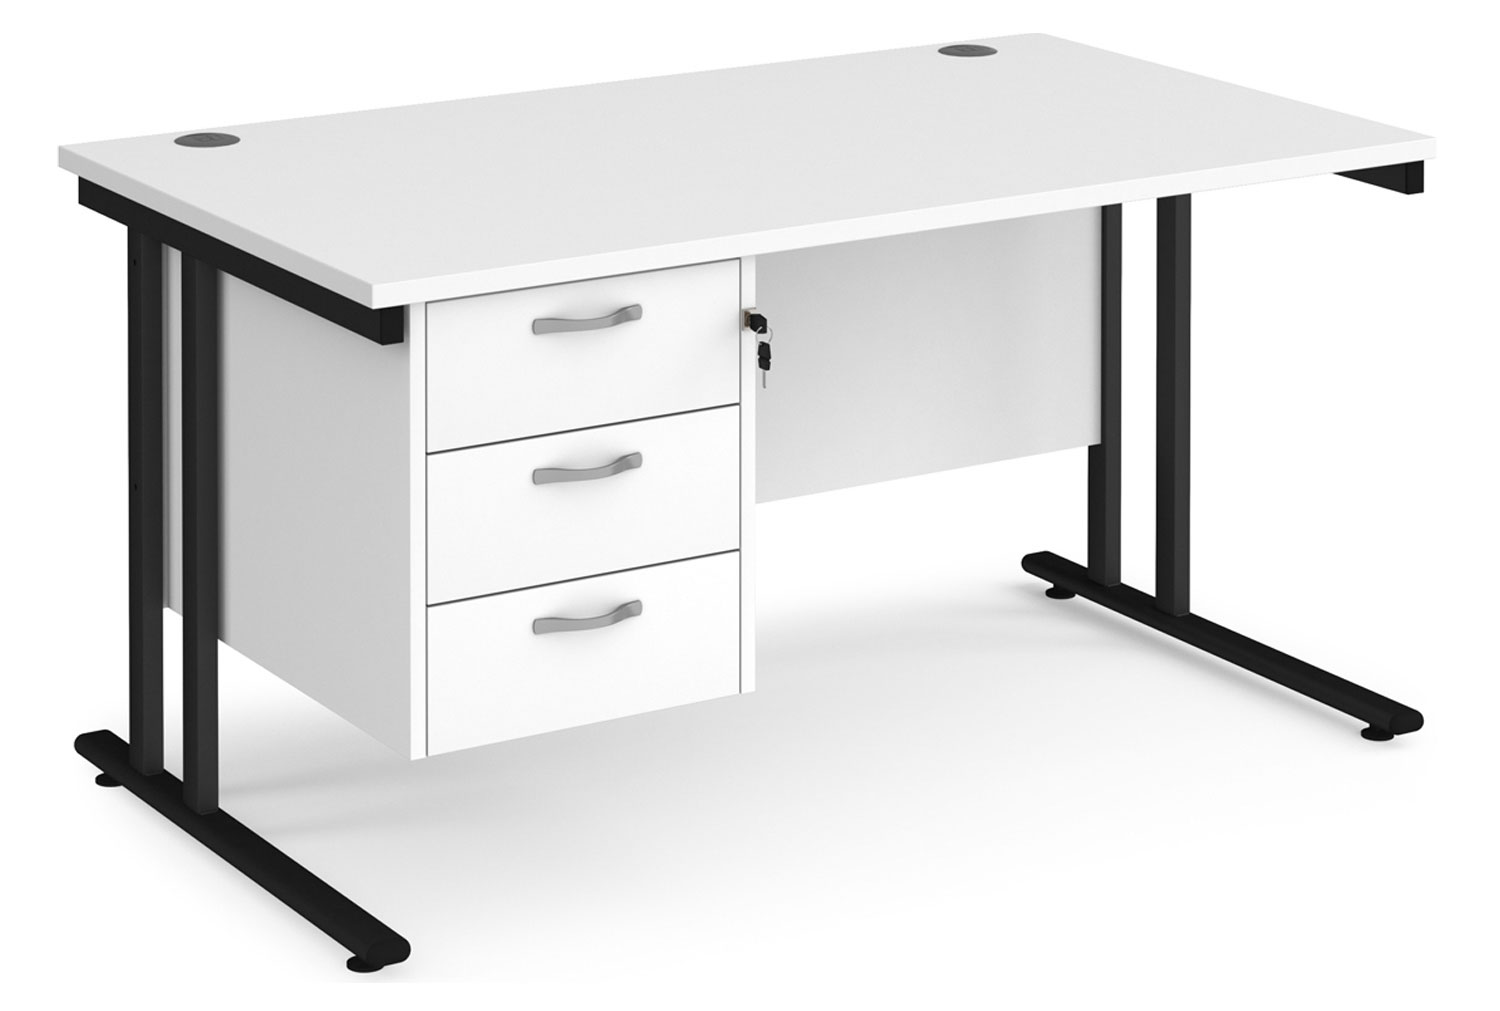 Value Line Deluxe C-Leg Rectangular Office Desk 3 Drawers (Black Legs), 140wx80dx73h (cm), White